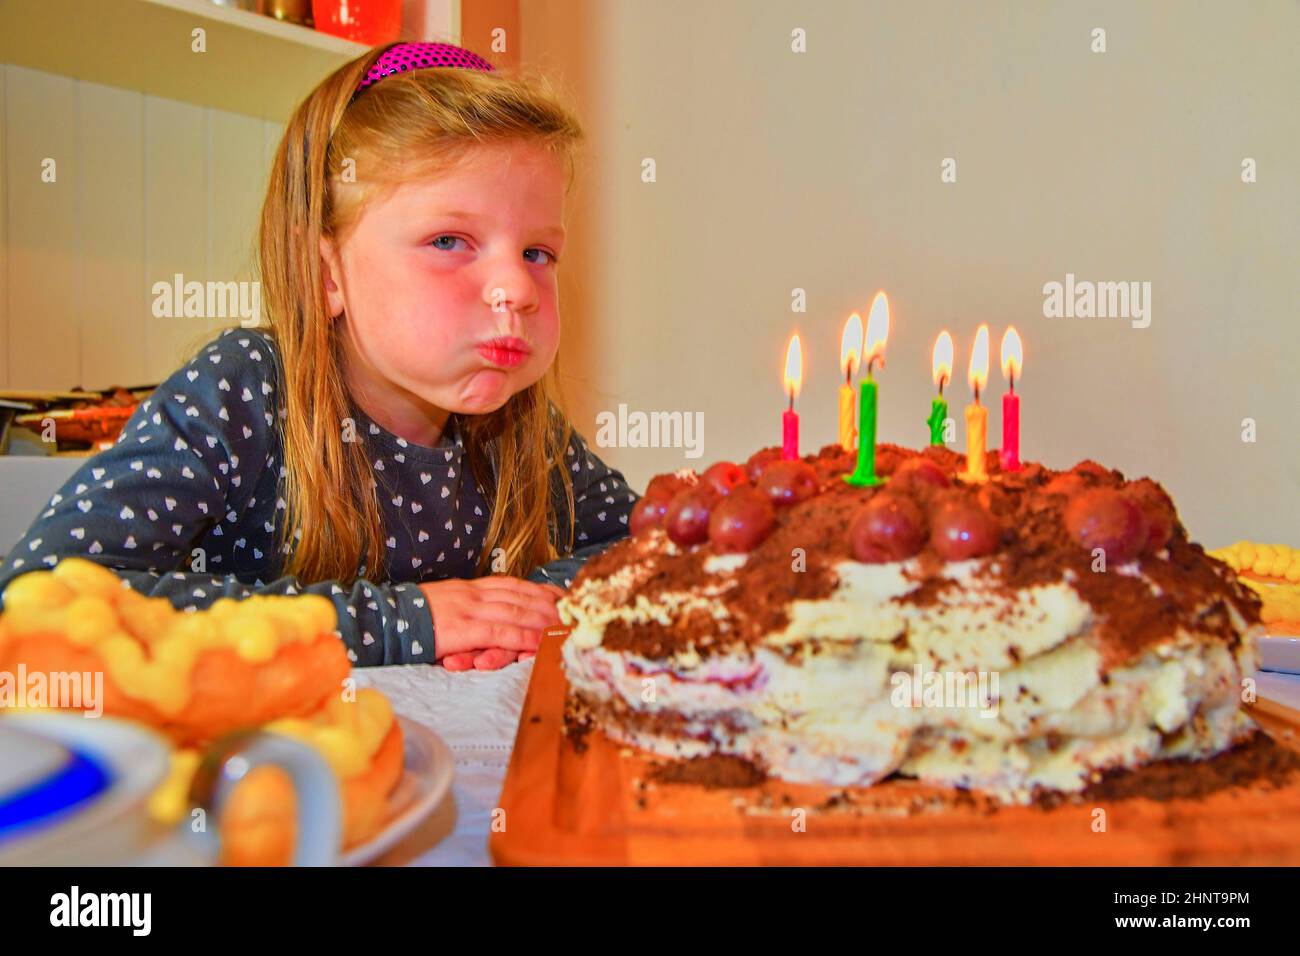 Kleine Mädchen bläst die Kerzen auf dem Geburtstagskuchen. Kleine Mädchen ihre sechs Geburtstag feiern. Geburtstag Kuchen und kleine Mädchen Stockfoto